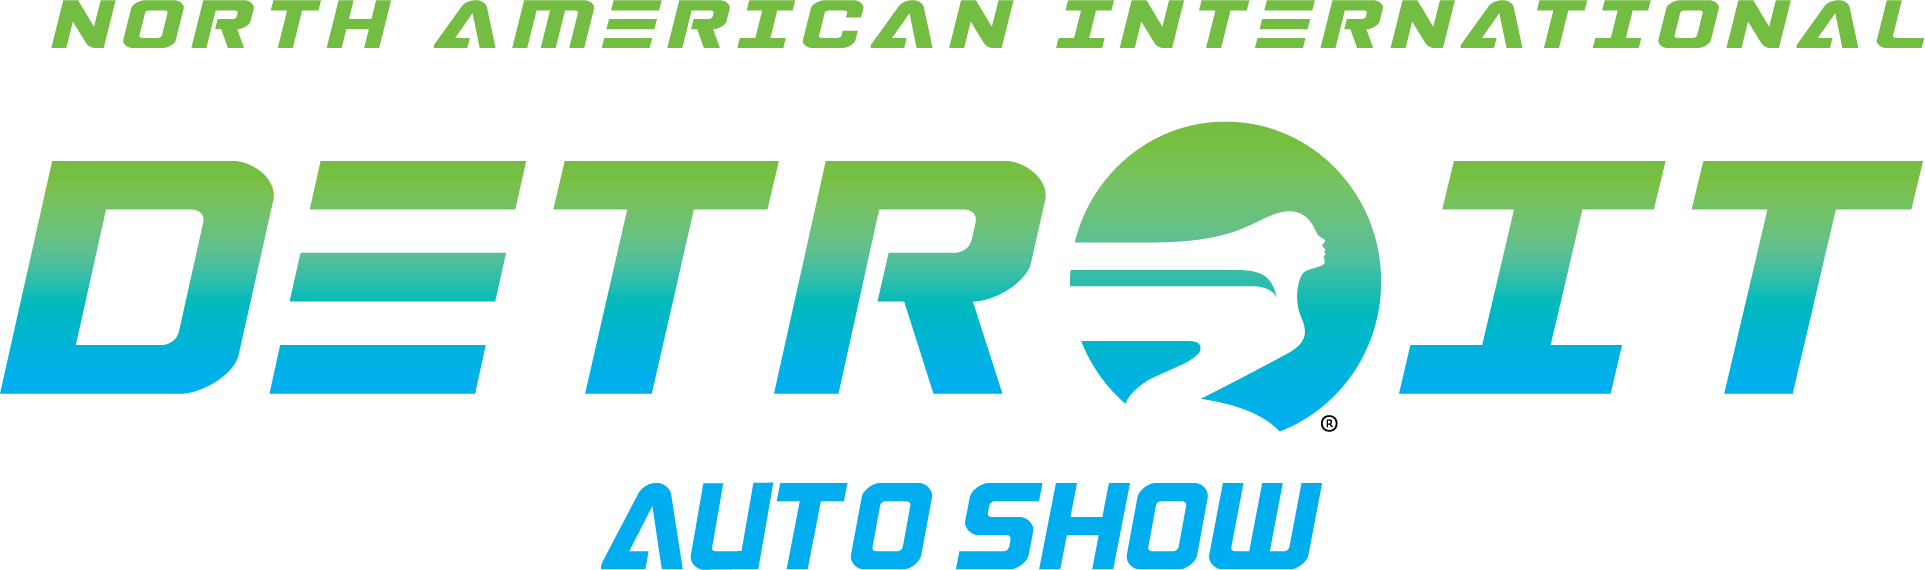 Detroit Auto Show